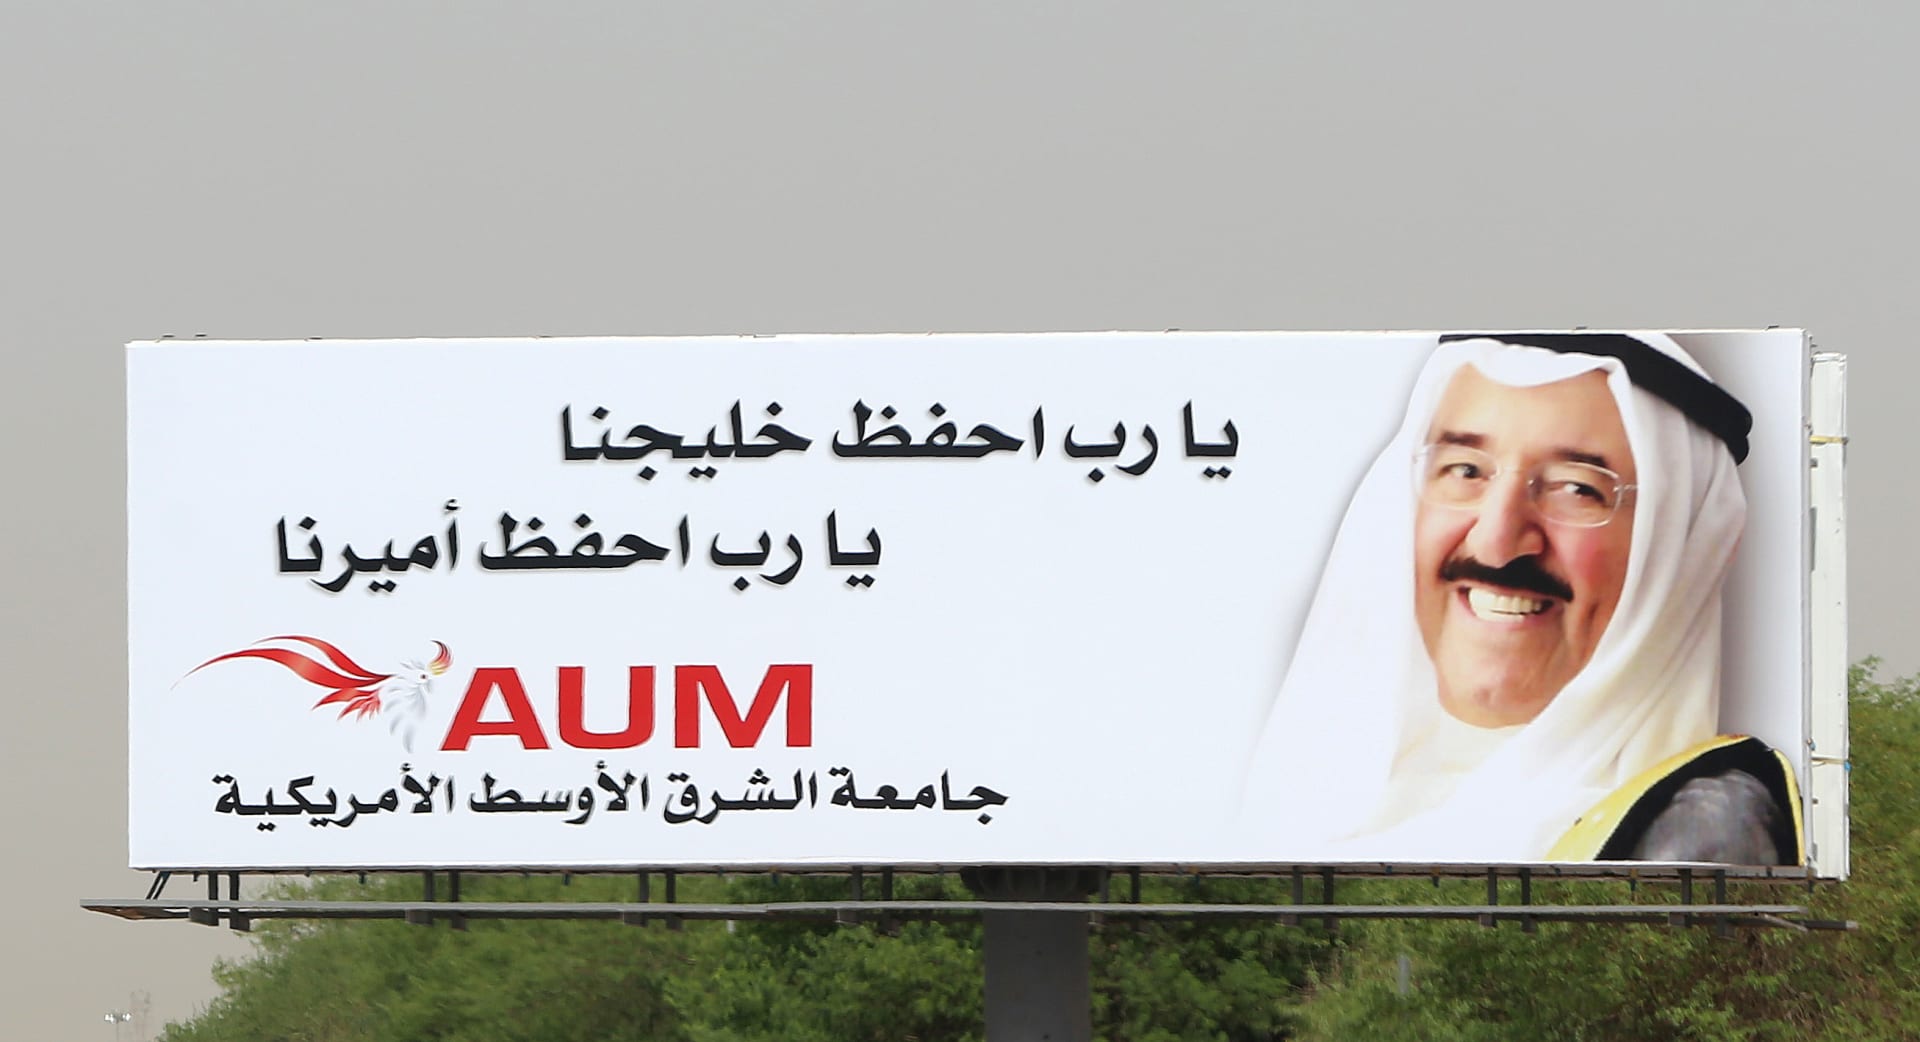 الكويت تسلّم قطر الدعوة للقمة الخليجية بعد أسابيع من الغموض